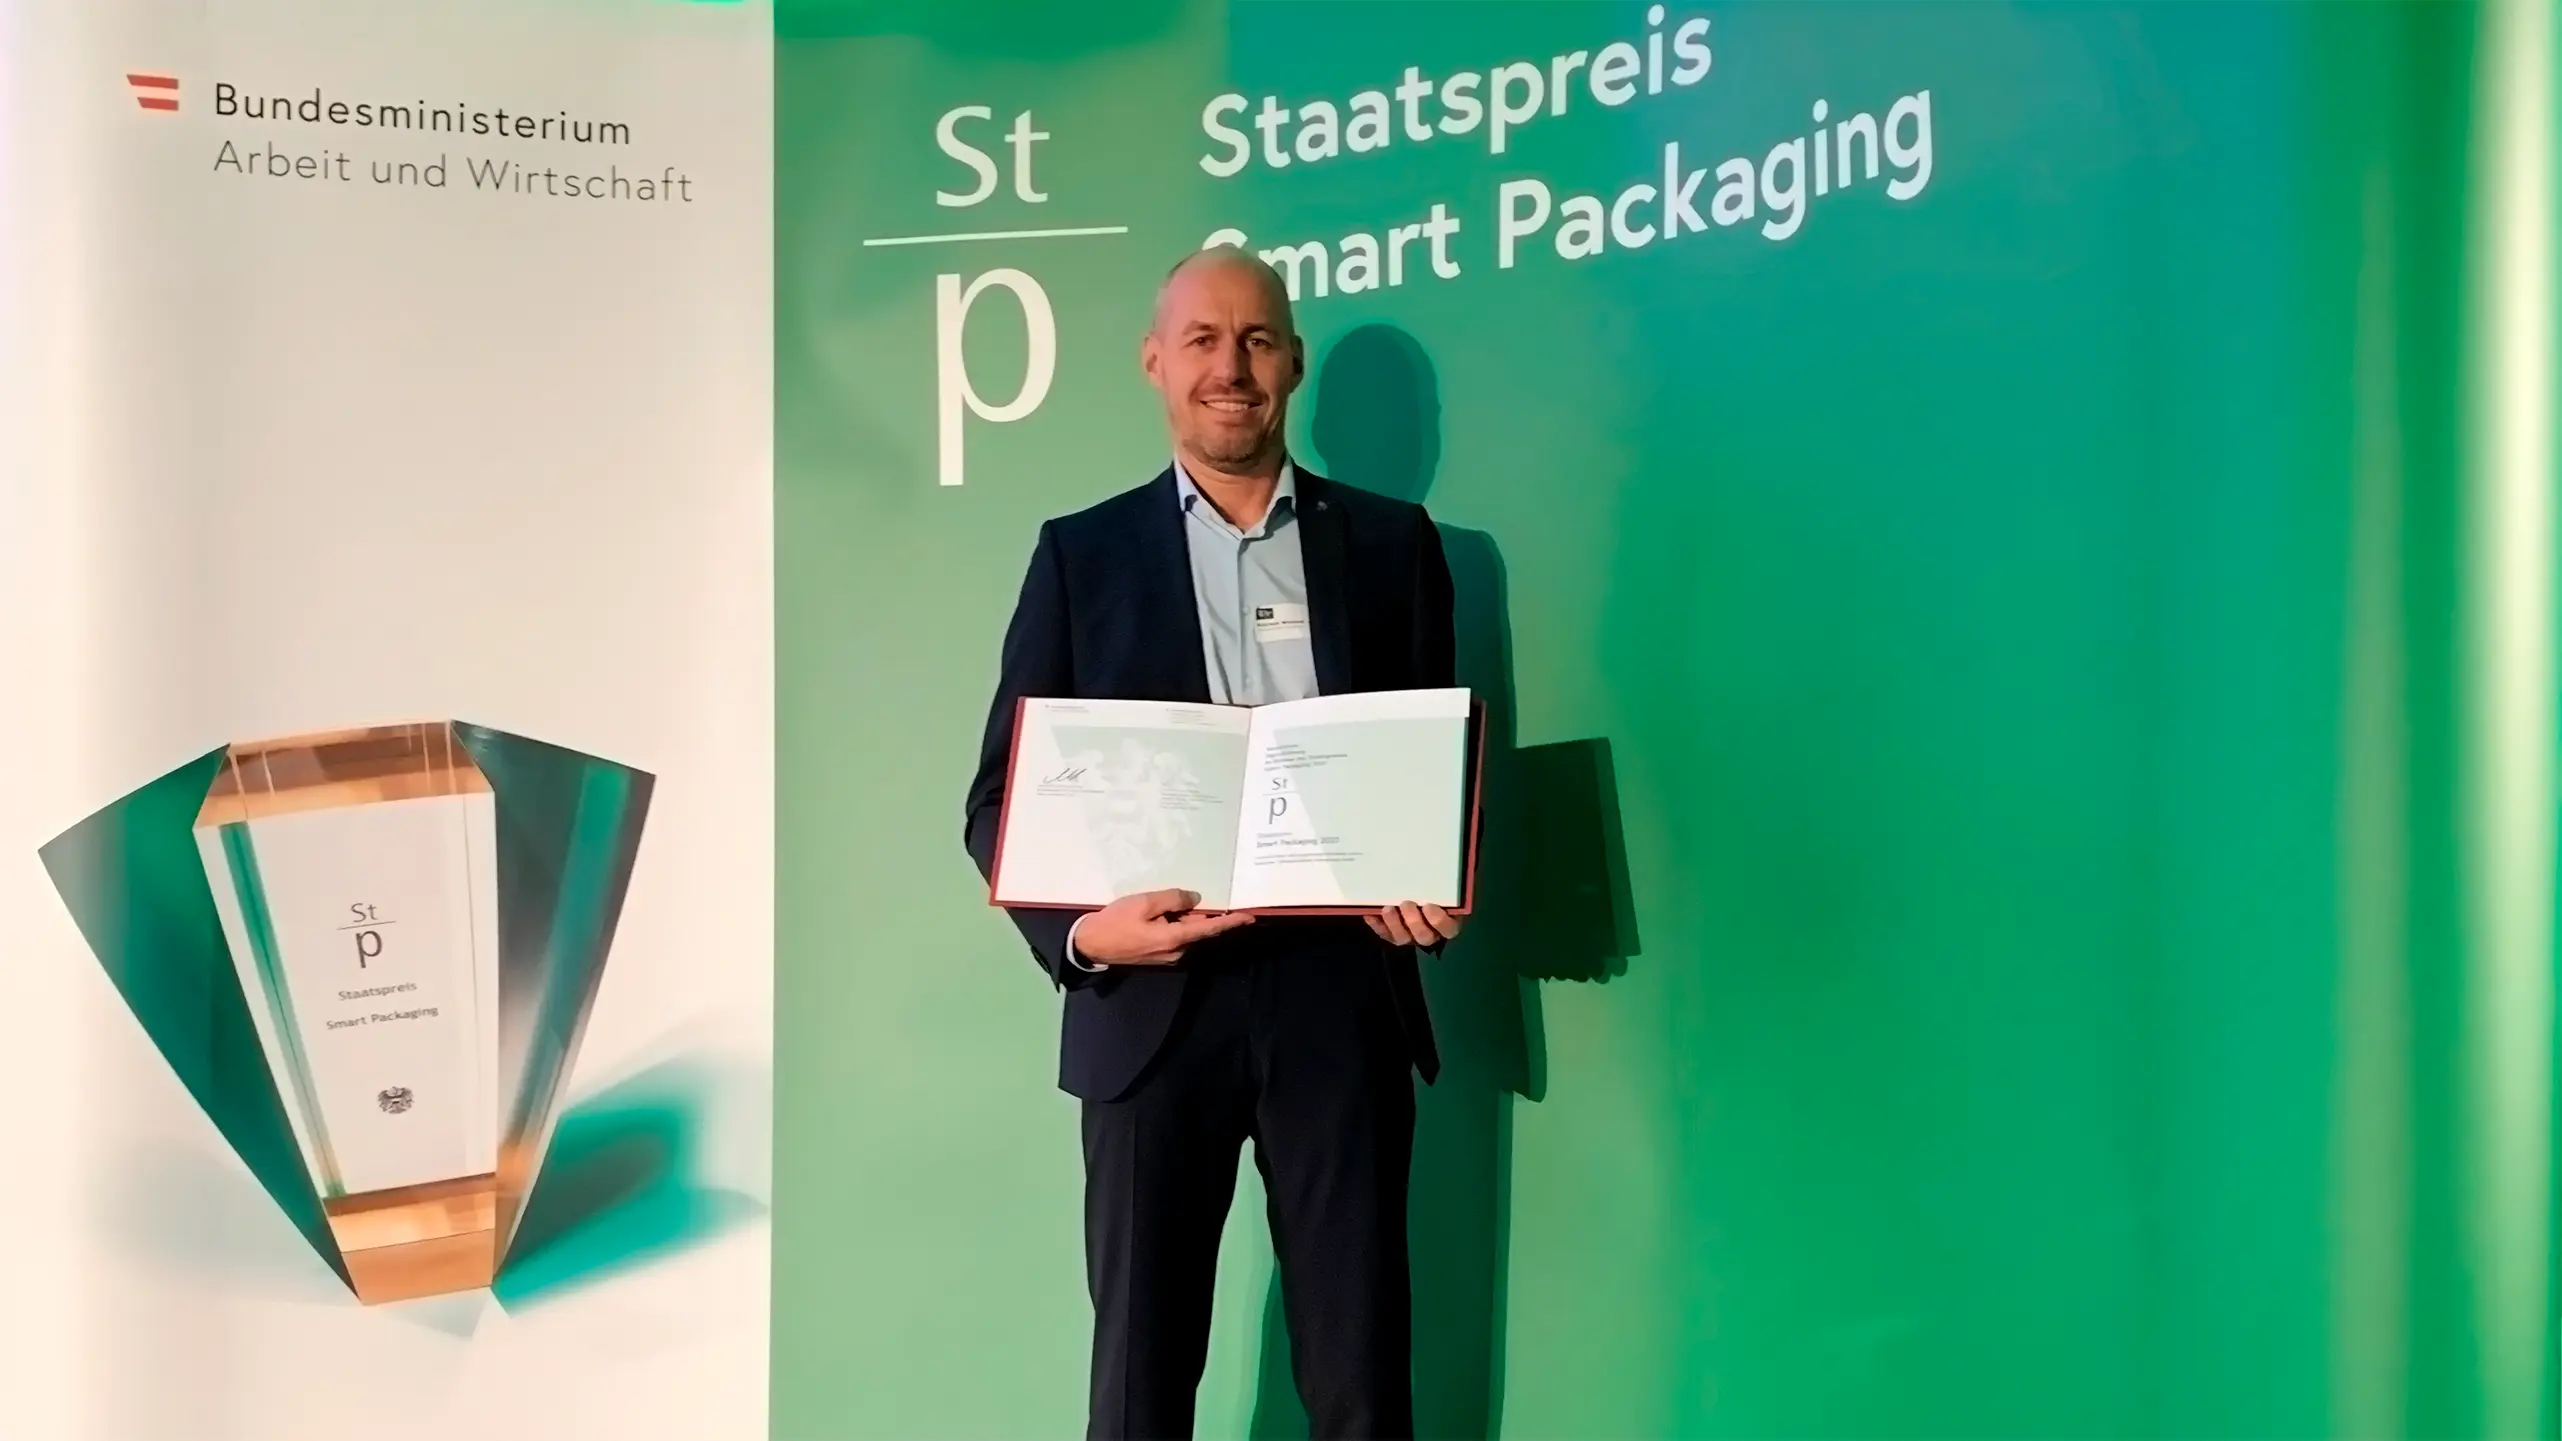 Unser Onlineshop wurde mit dem Staatspreis "Smart Packaging" ausgezeichnet